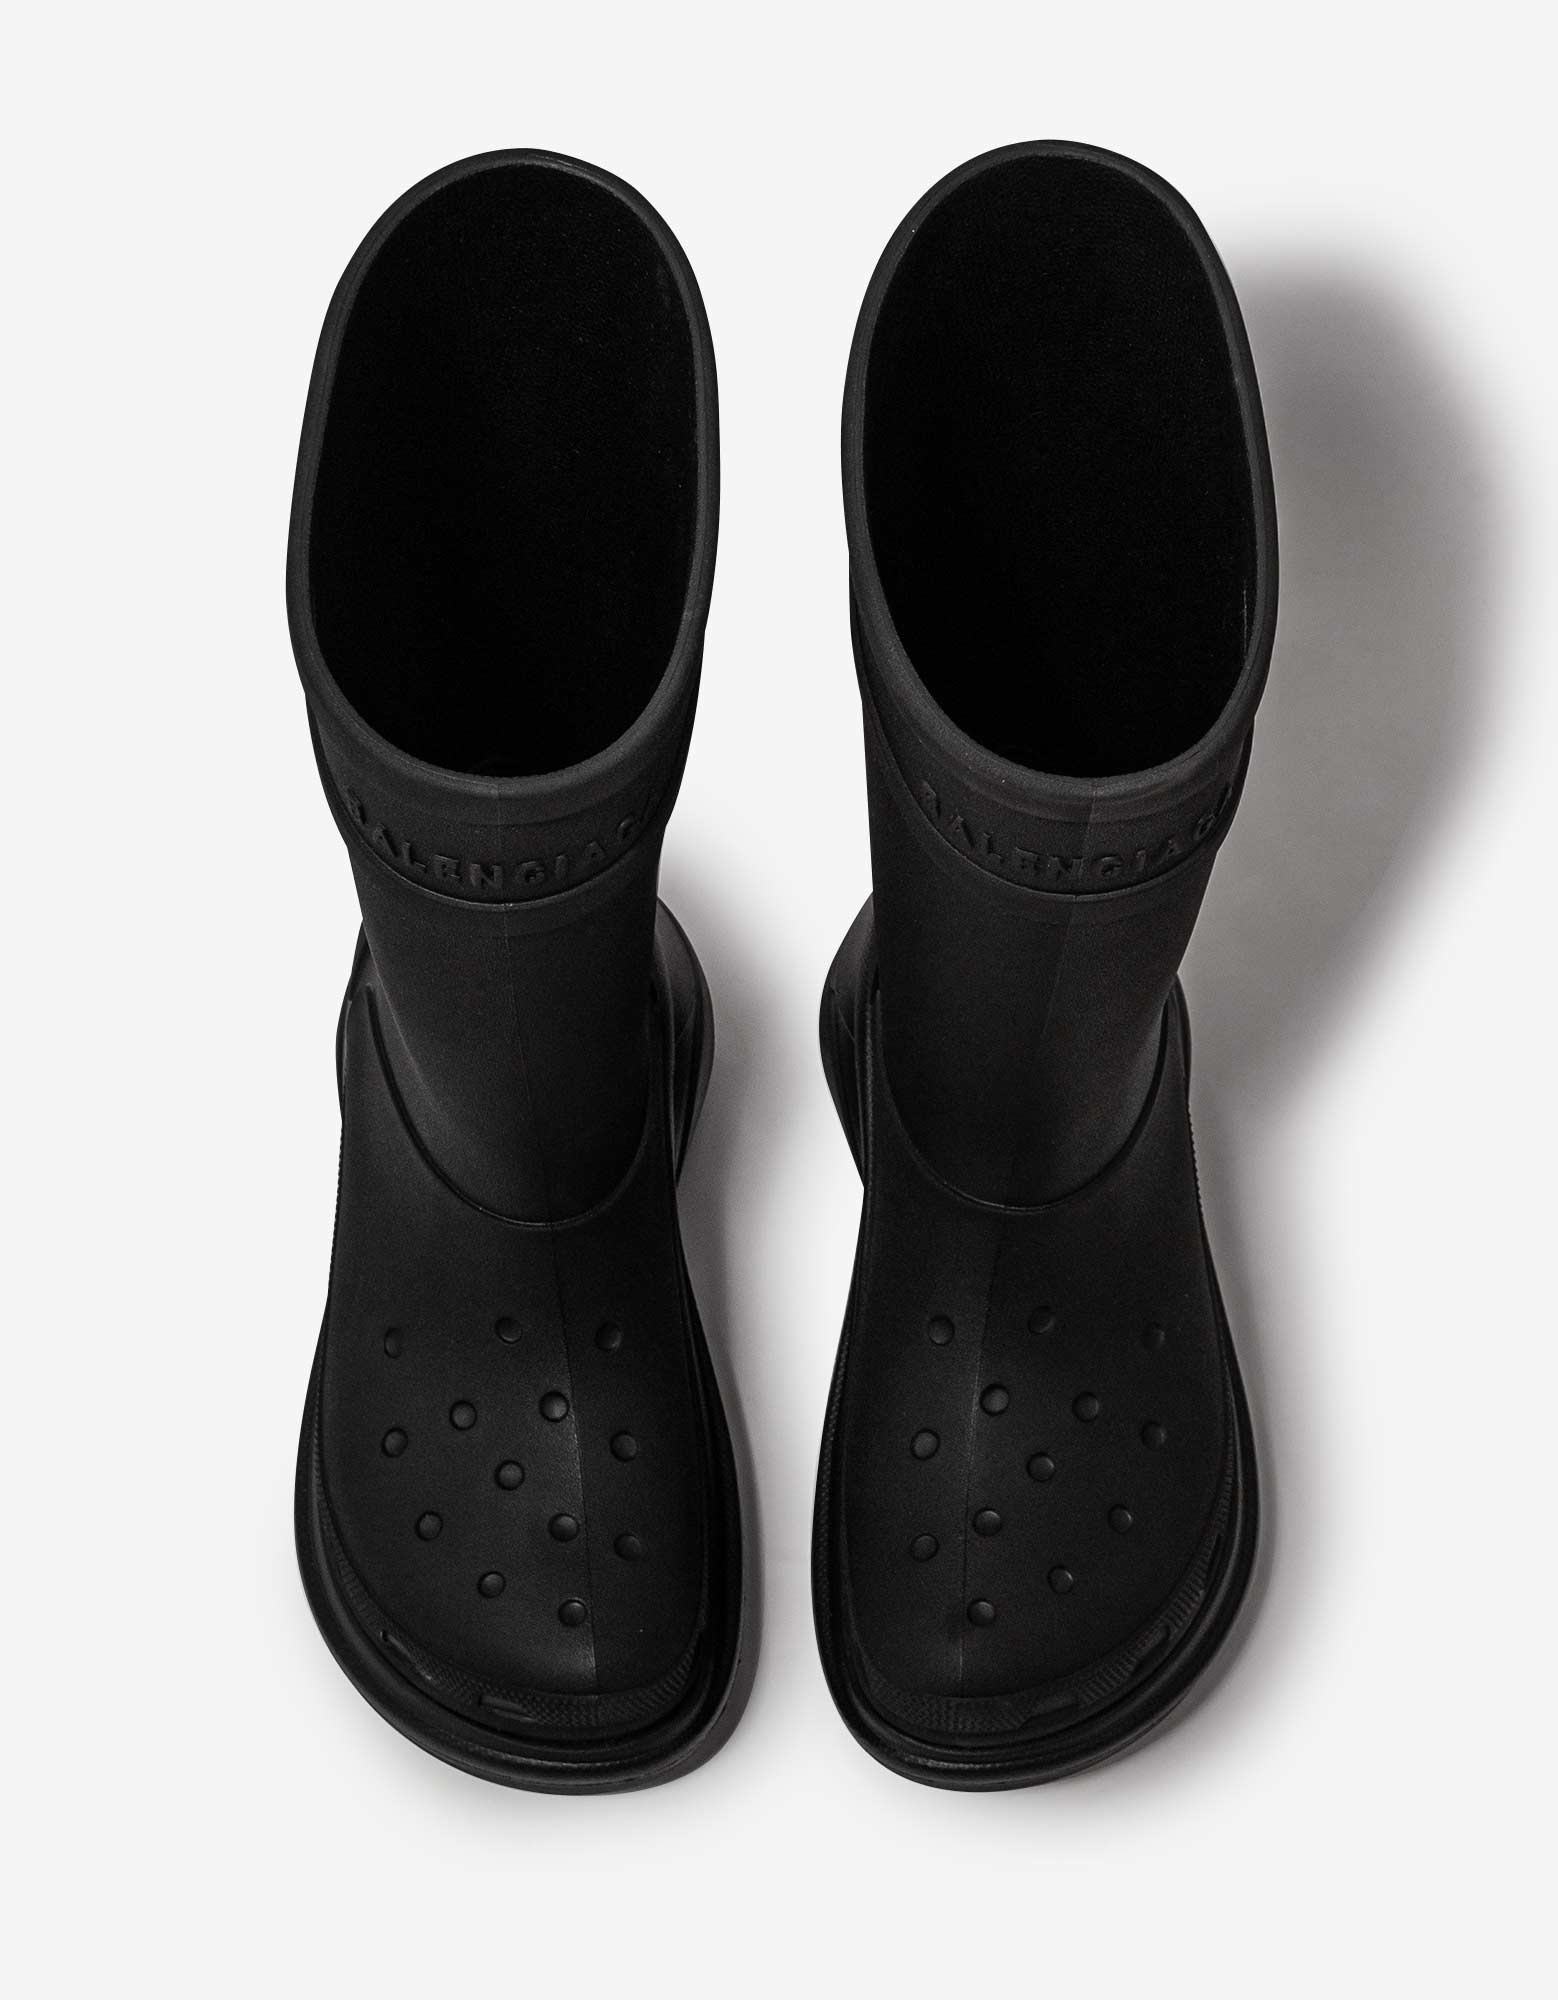 Black Crocs Boots - 3